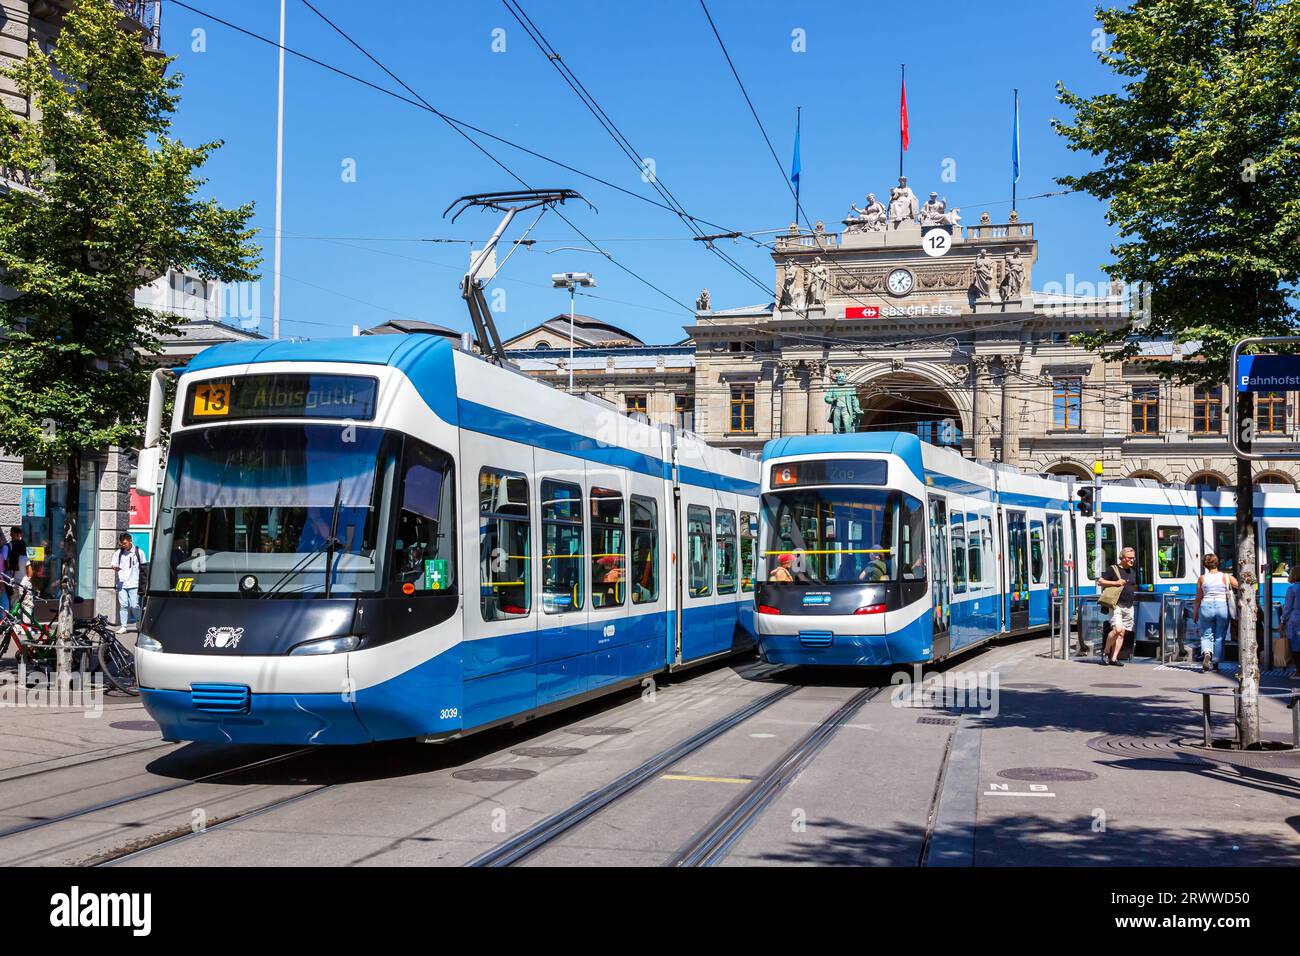 Zurigo, Svizzera - 10 agosto 2023: Bahnhofstrasse con tram tipo Cobra-tram trasporto pubblico nella città di Zurigo, Svizzera. Foto Stock